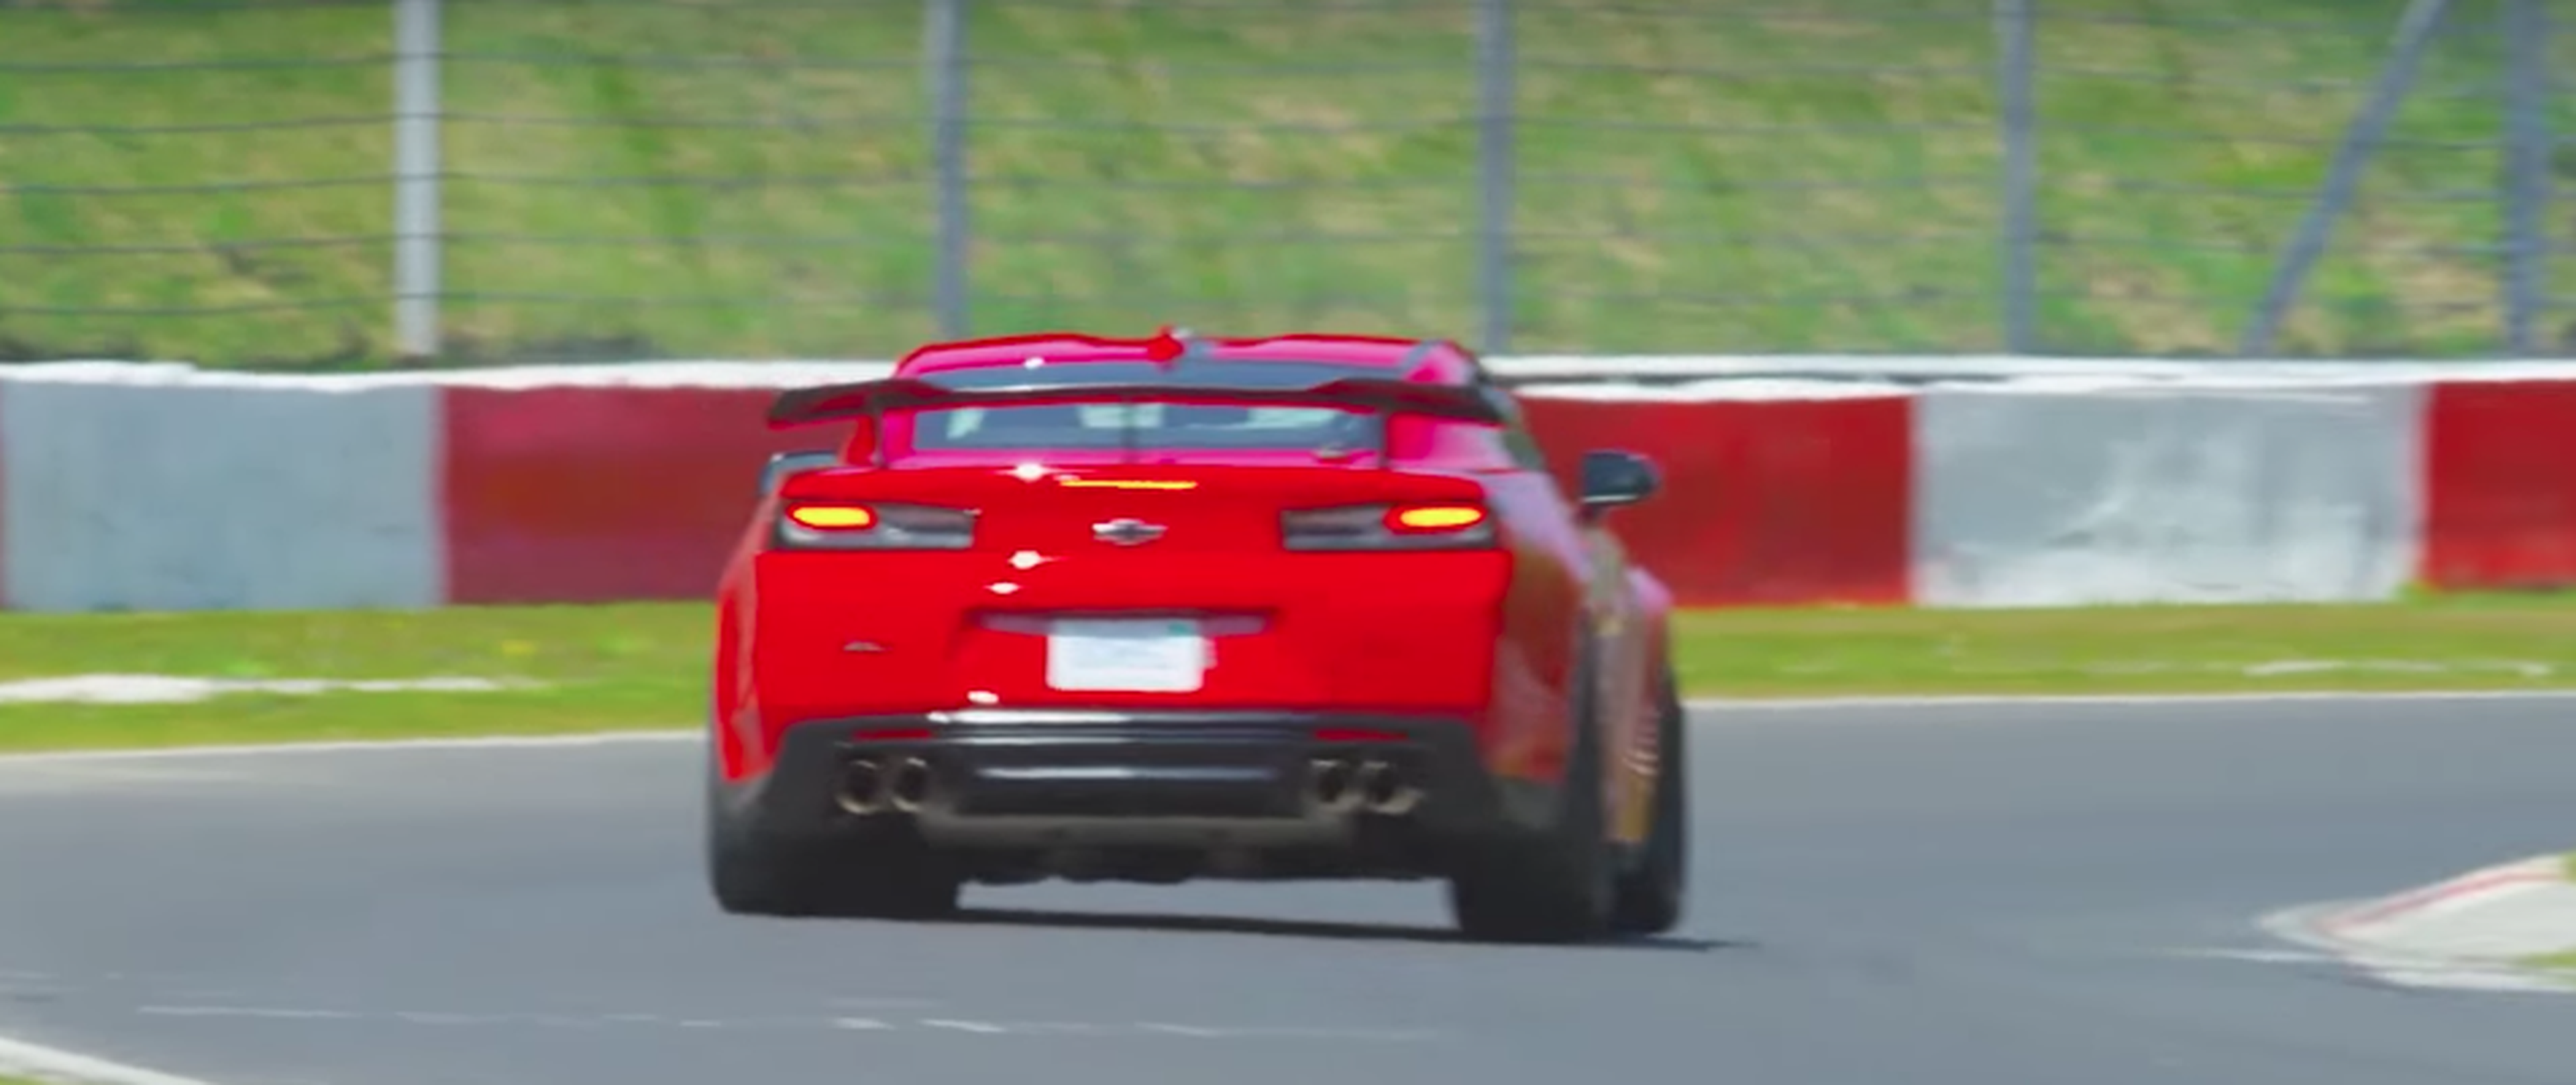 VÍDEO: ¡Tiempazo! El Chevrolet Camaro ZL1 conquista Nurburgring